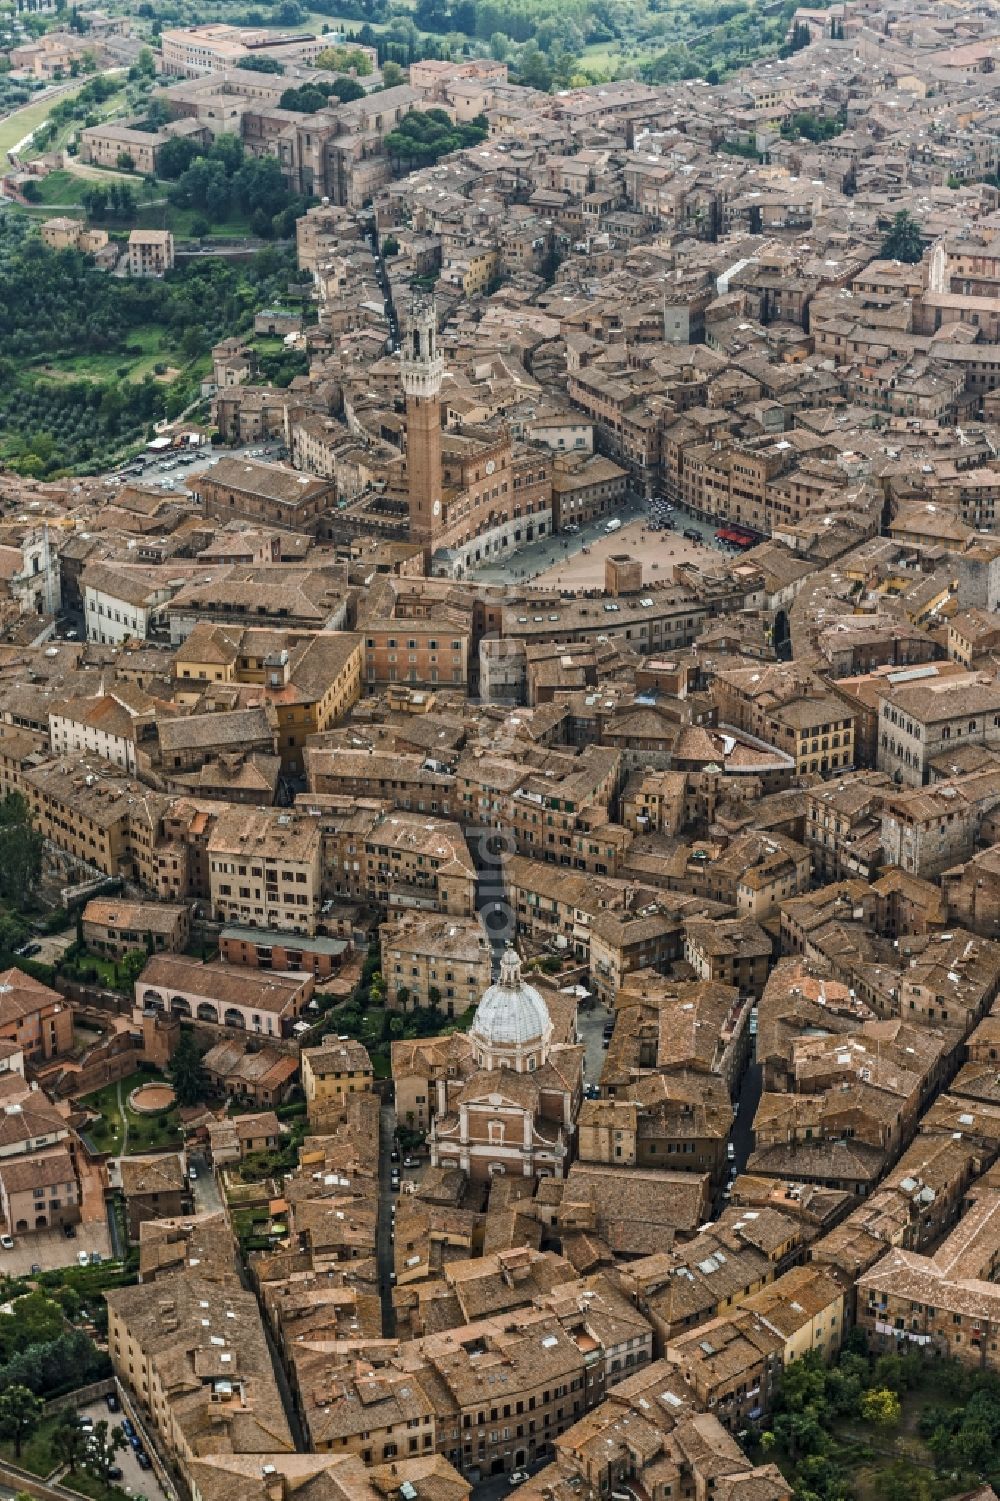 Siena aus der Vogelperspektive: Stadtansicht von Siena in der gleichnamigen Provinz in Italien